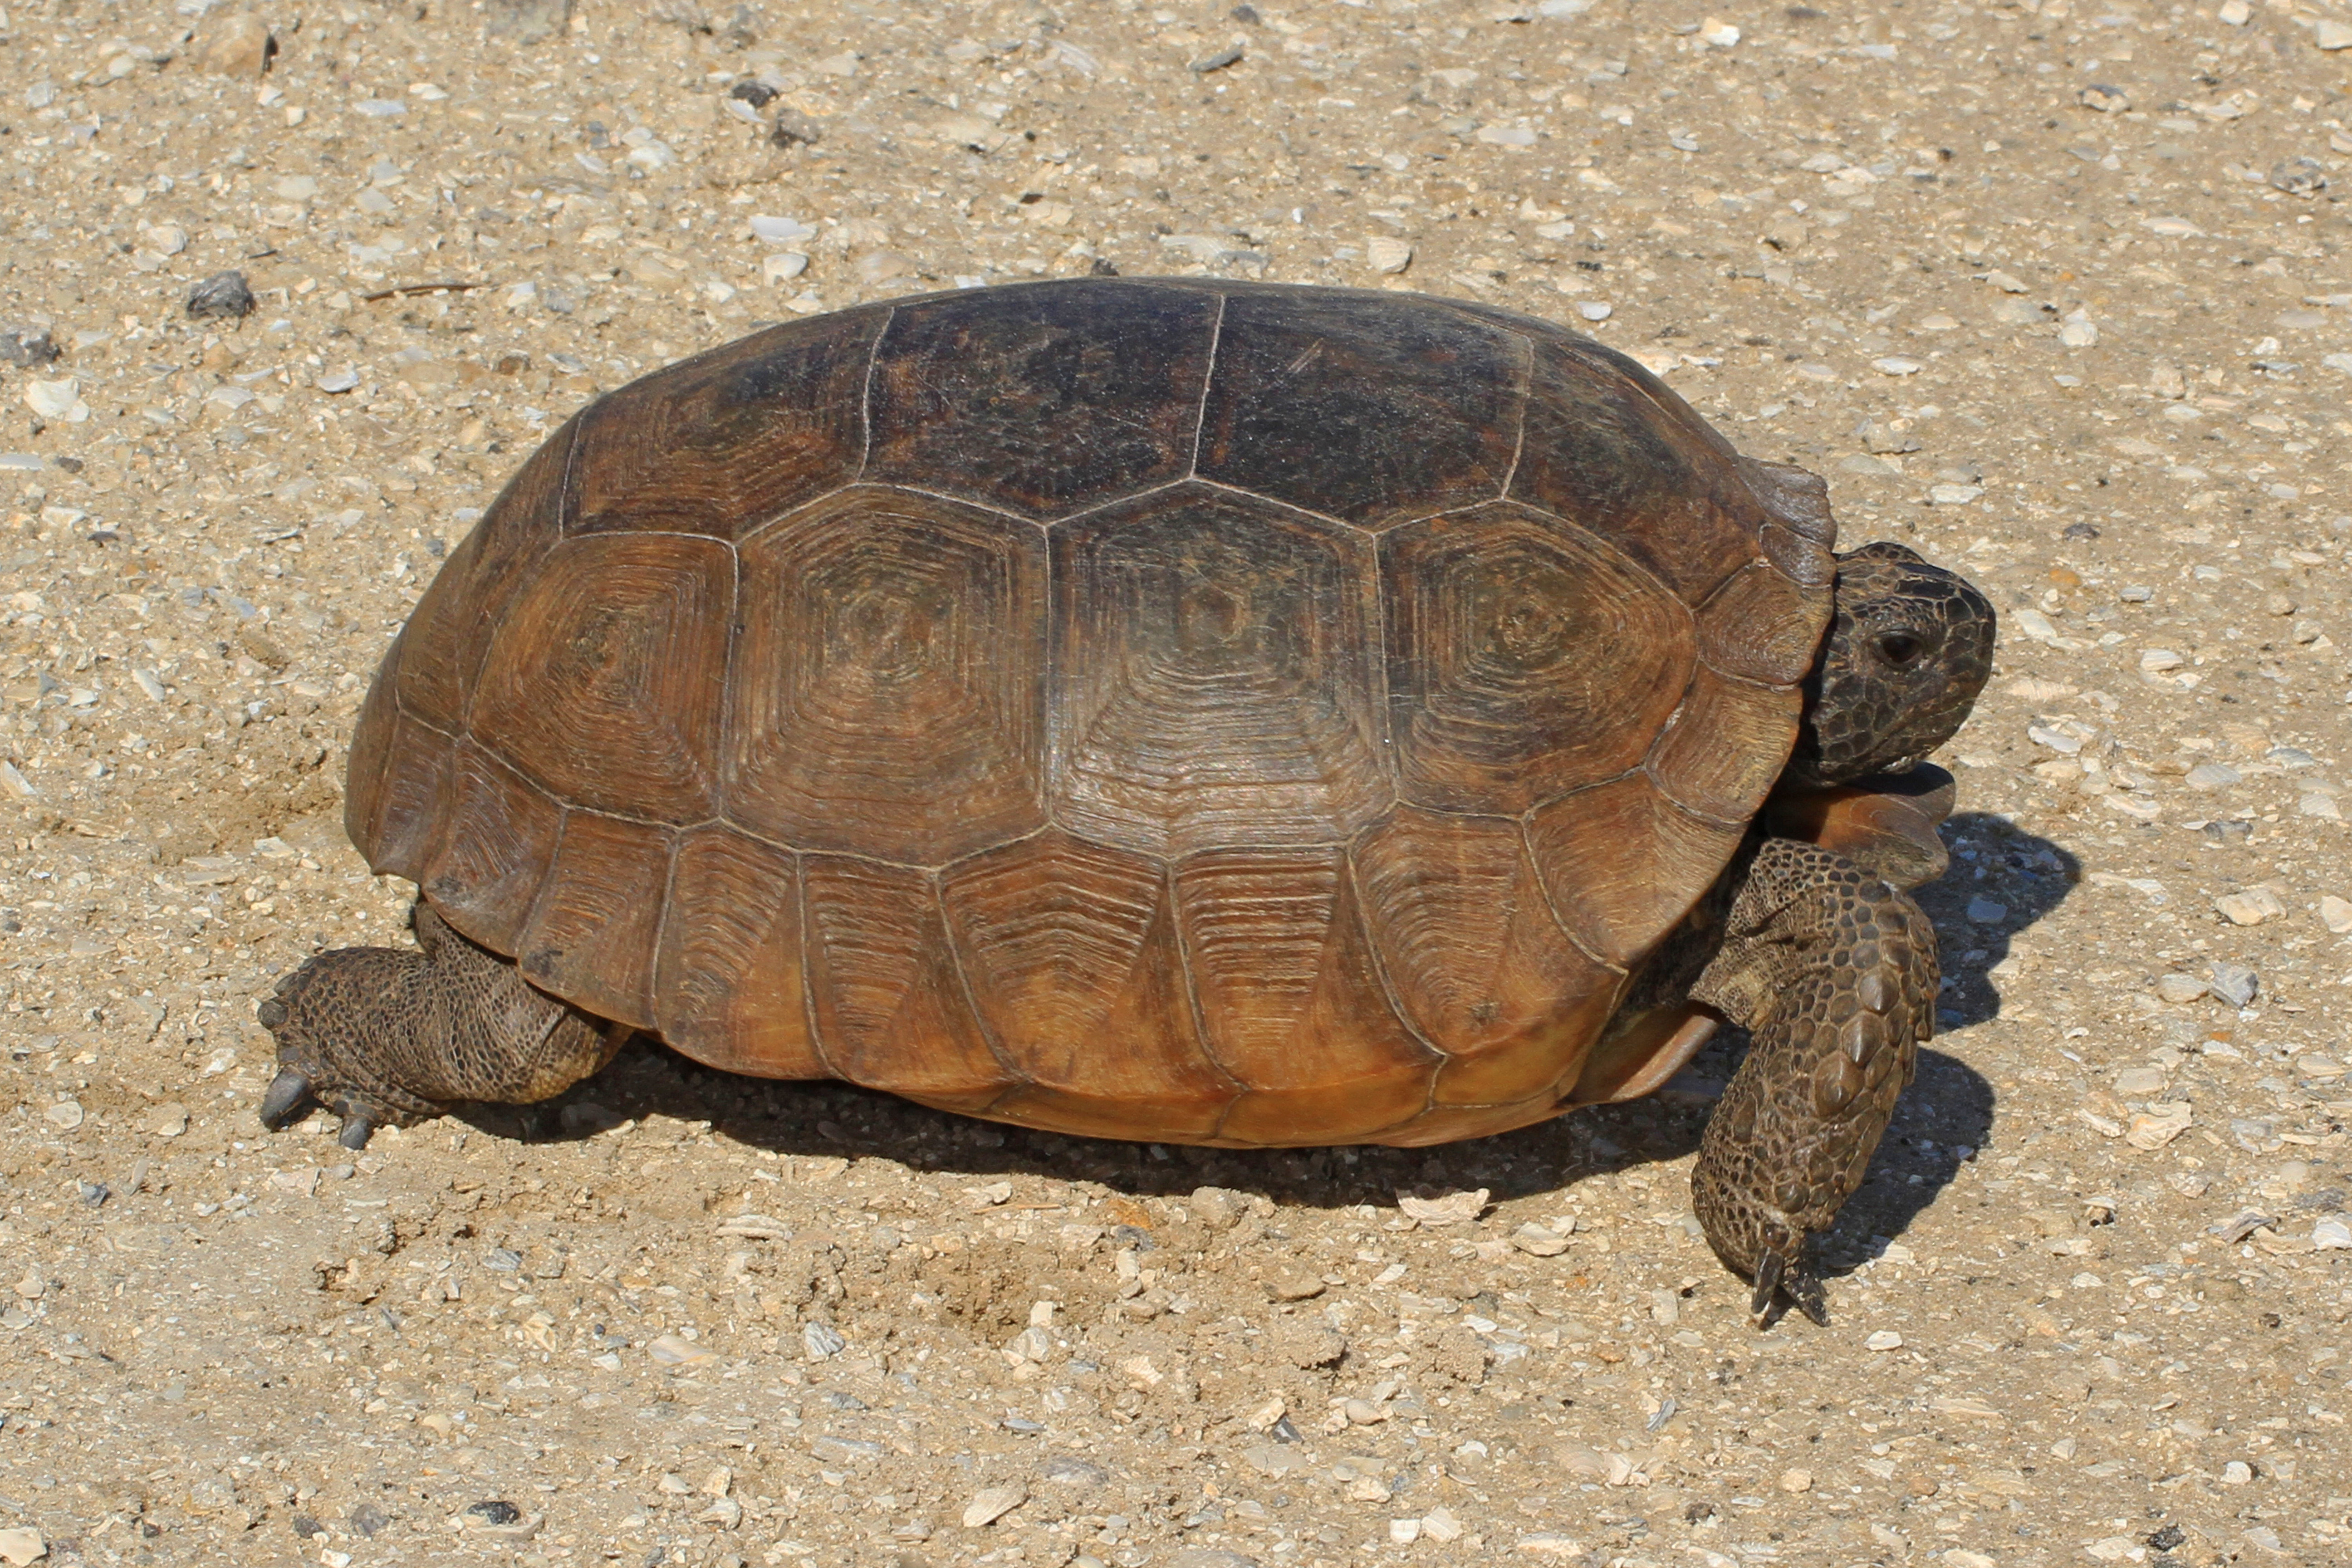 Gopher tortoise - Wikipedia